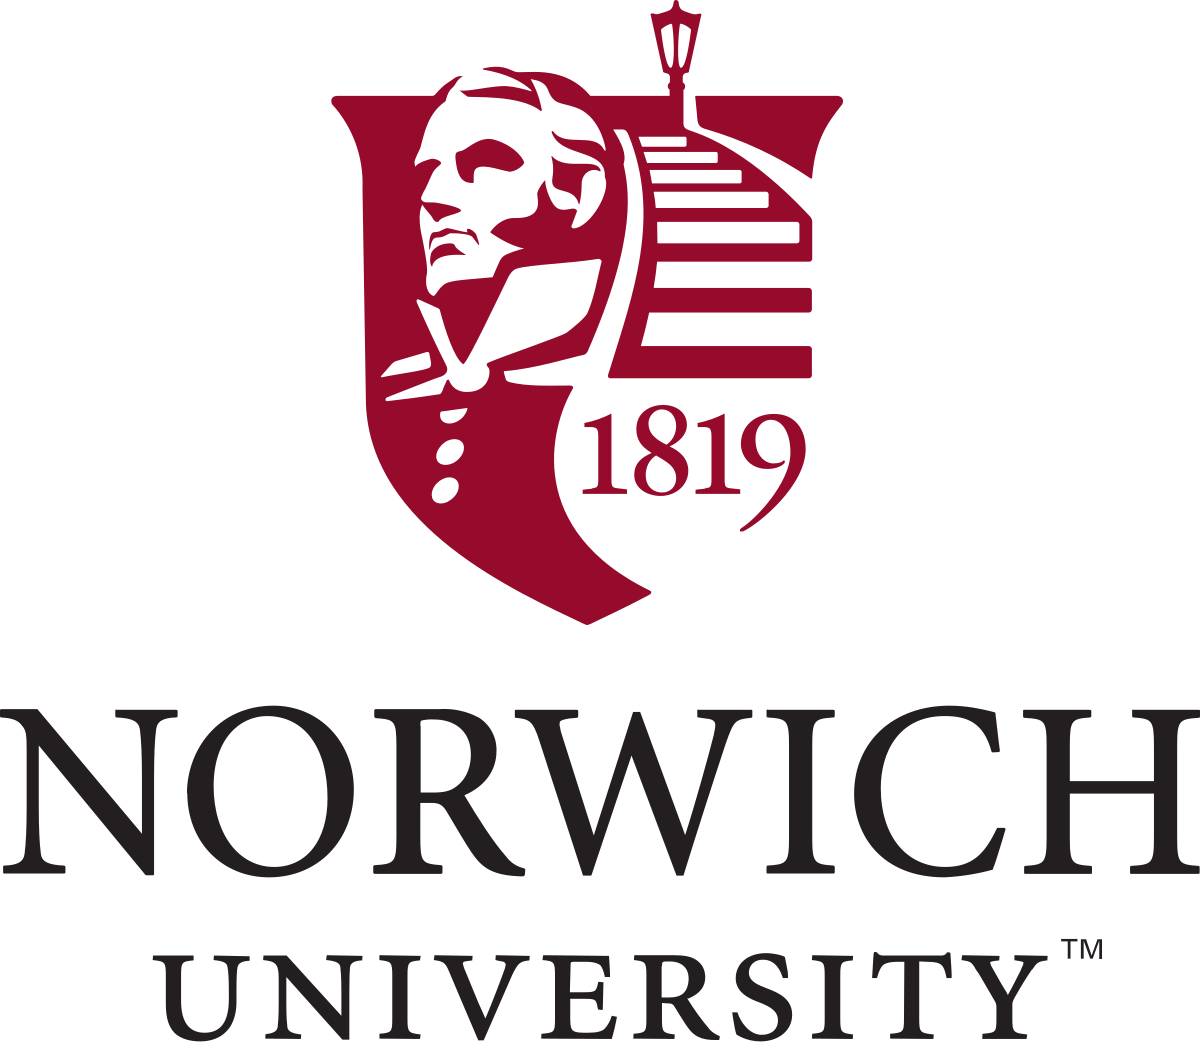 Norwich University - Wikipedia